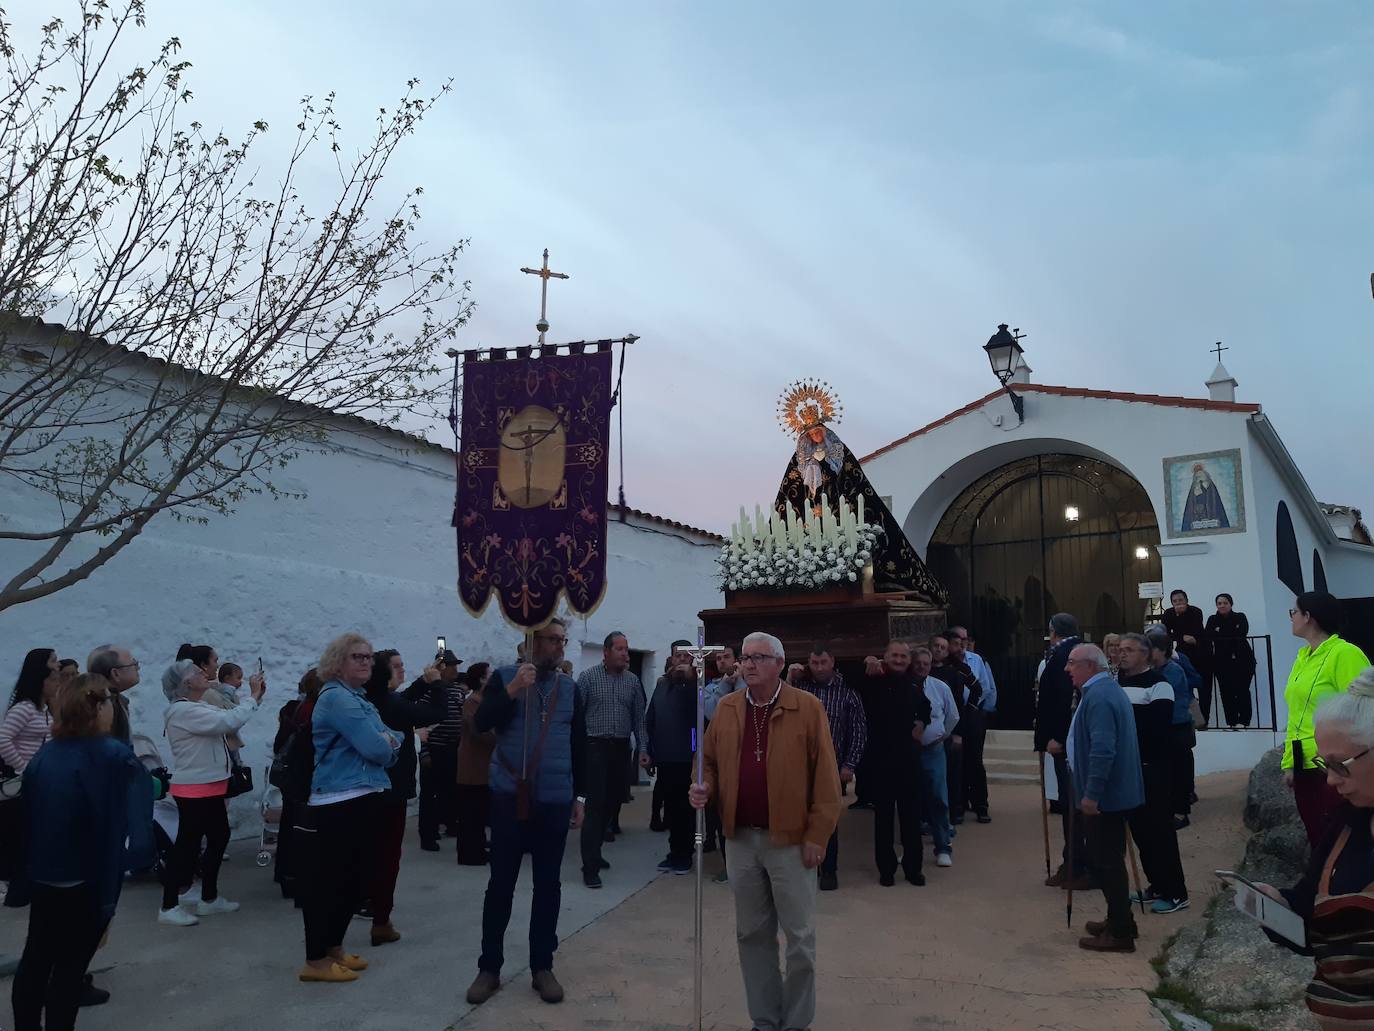 Imagen principal - La Virgen de la Soledad llega a la parroquia arropada por numerosos vecinos